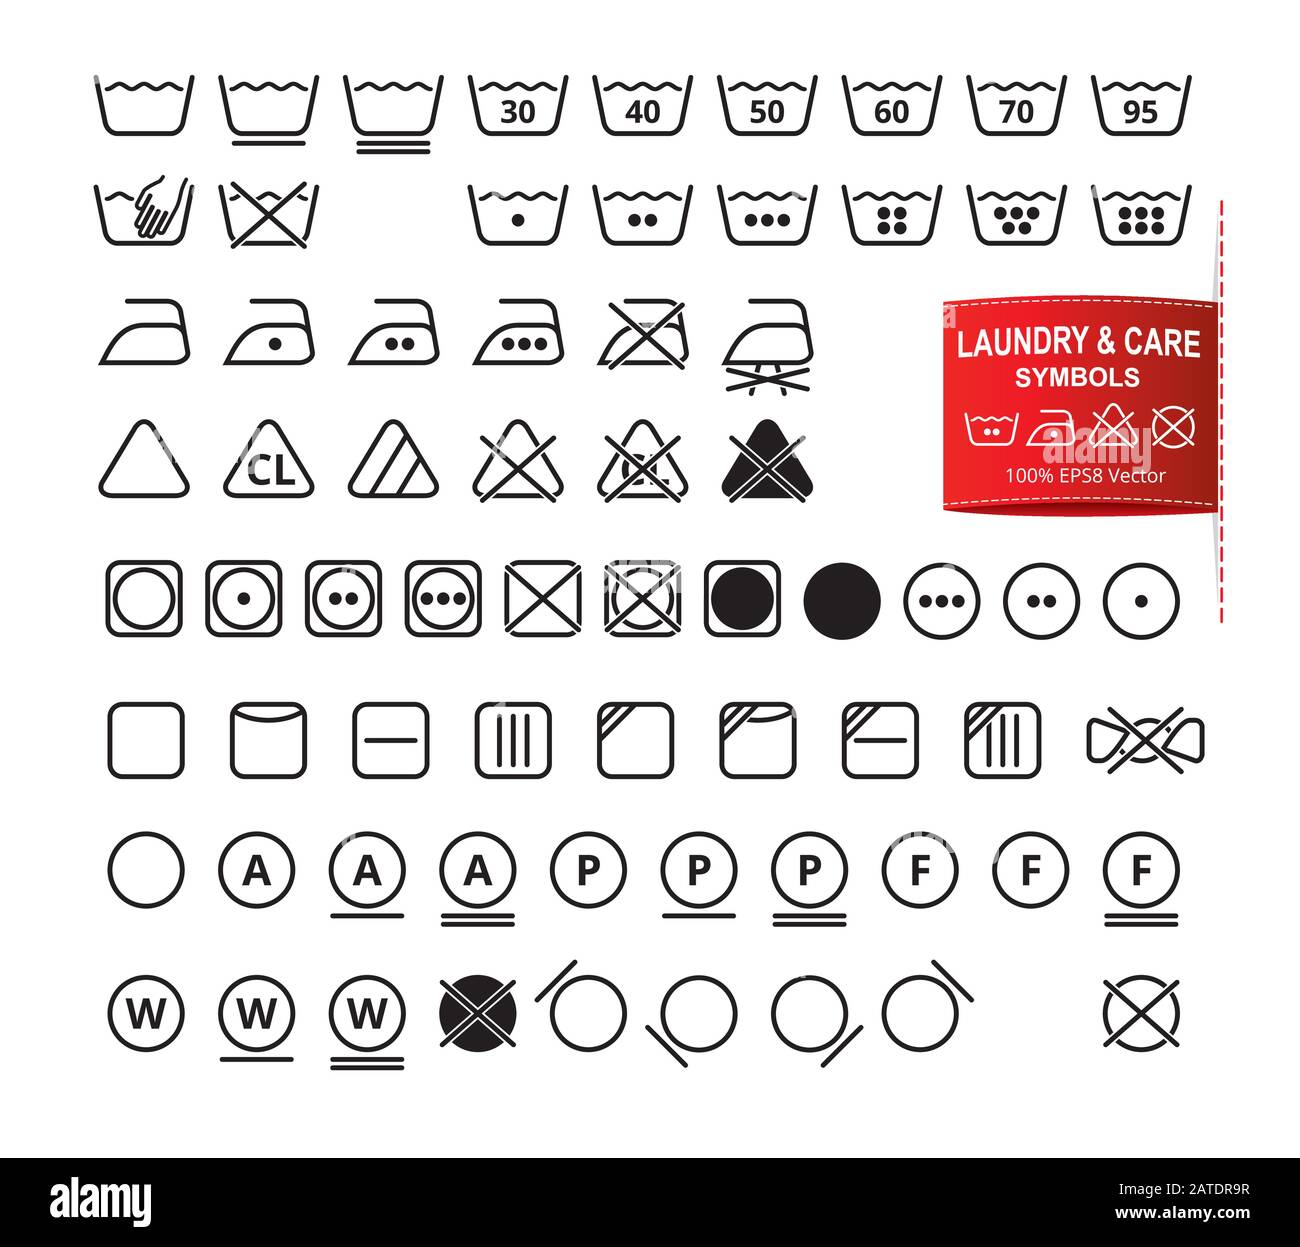 Conjunto de iconos de símbolos de lavandería en un estilo moderno de diseño  plano de líneas finas. Lavado de ropa, blanqueo, secado, planchado,  pictogramas de limpieza. Laboratorio de cuidado de la ropa